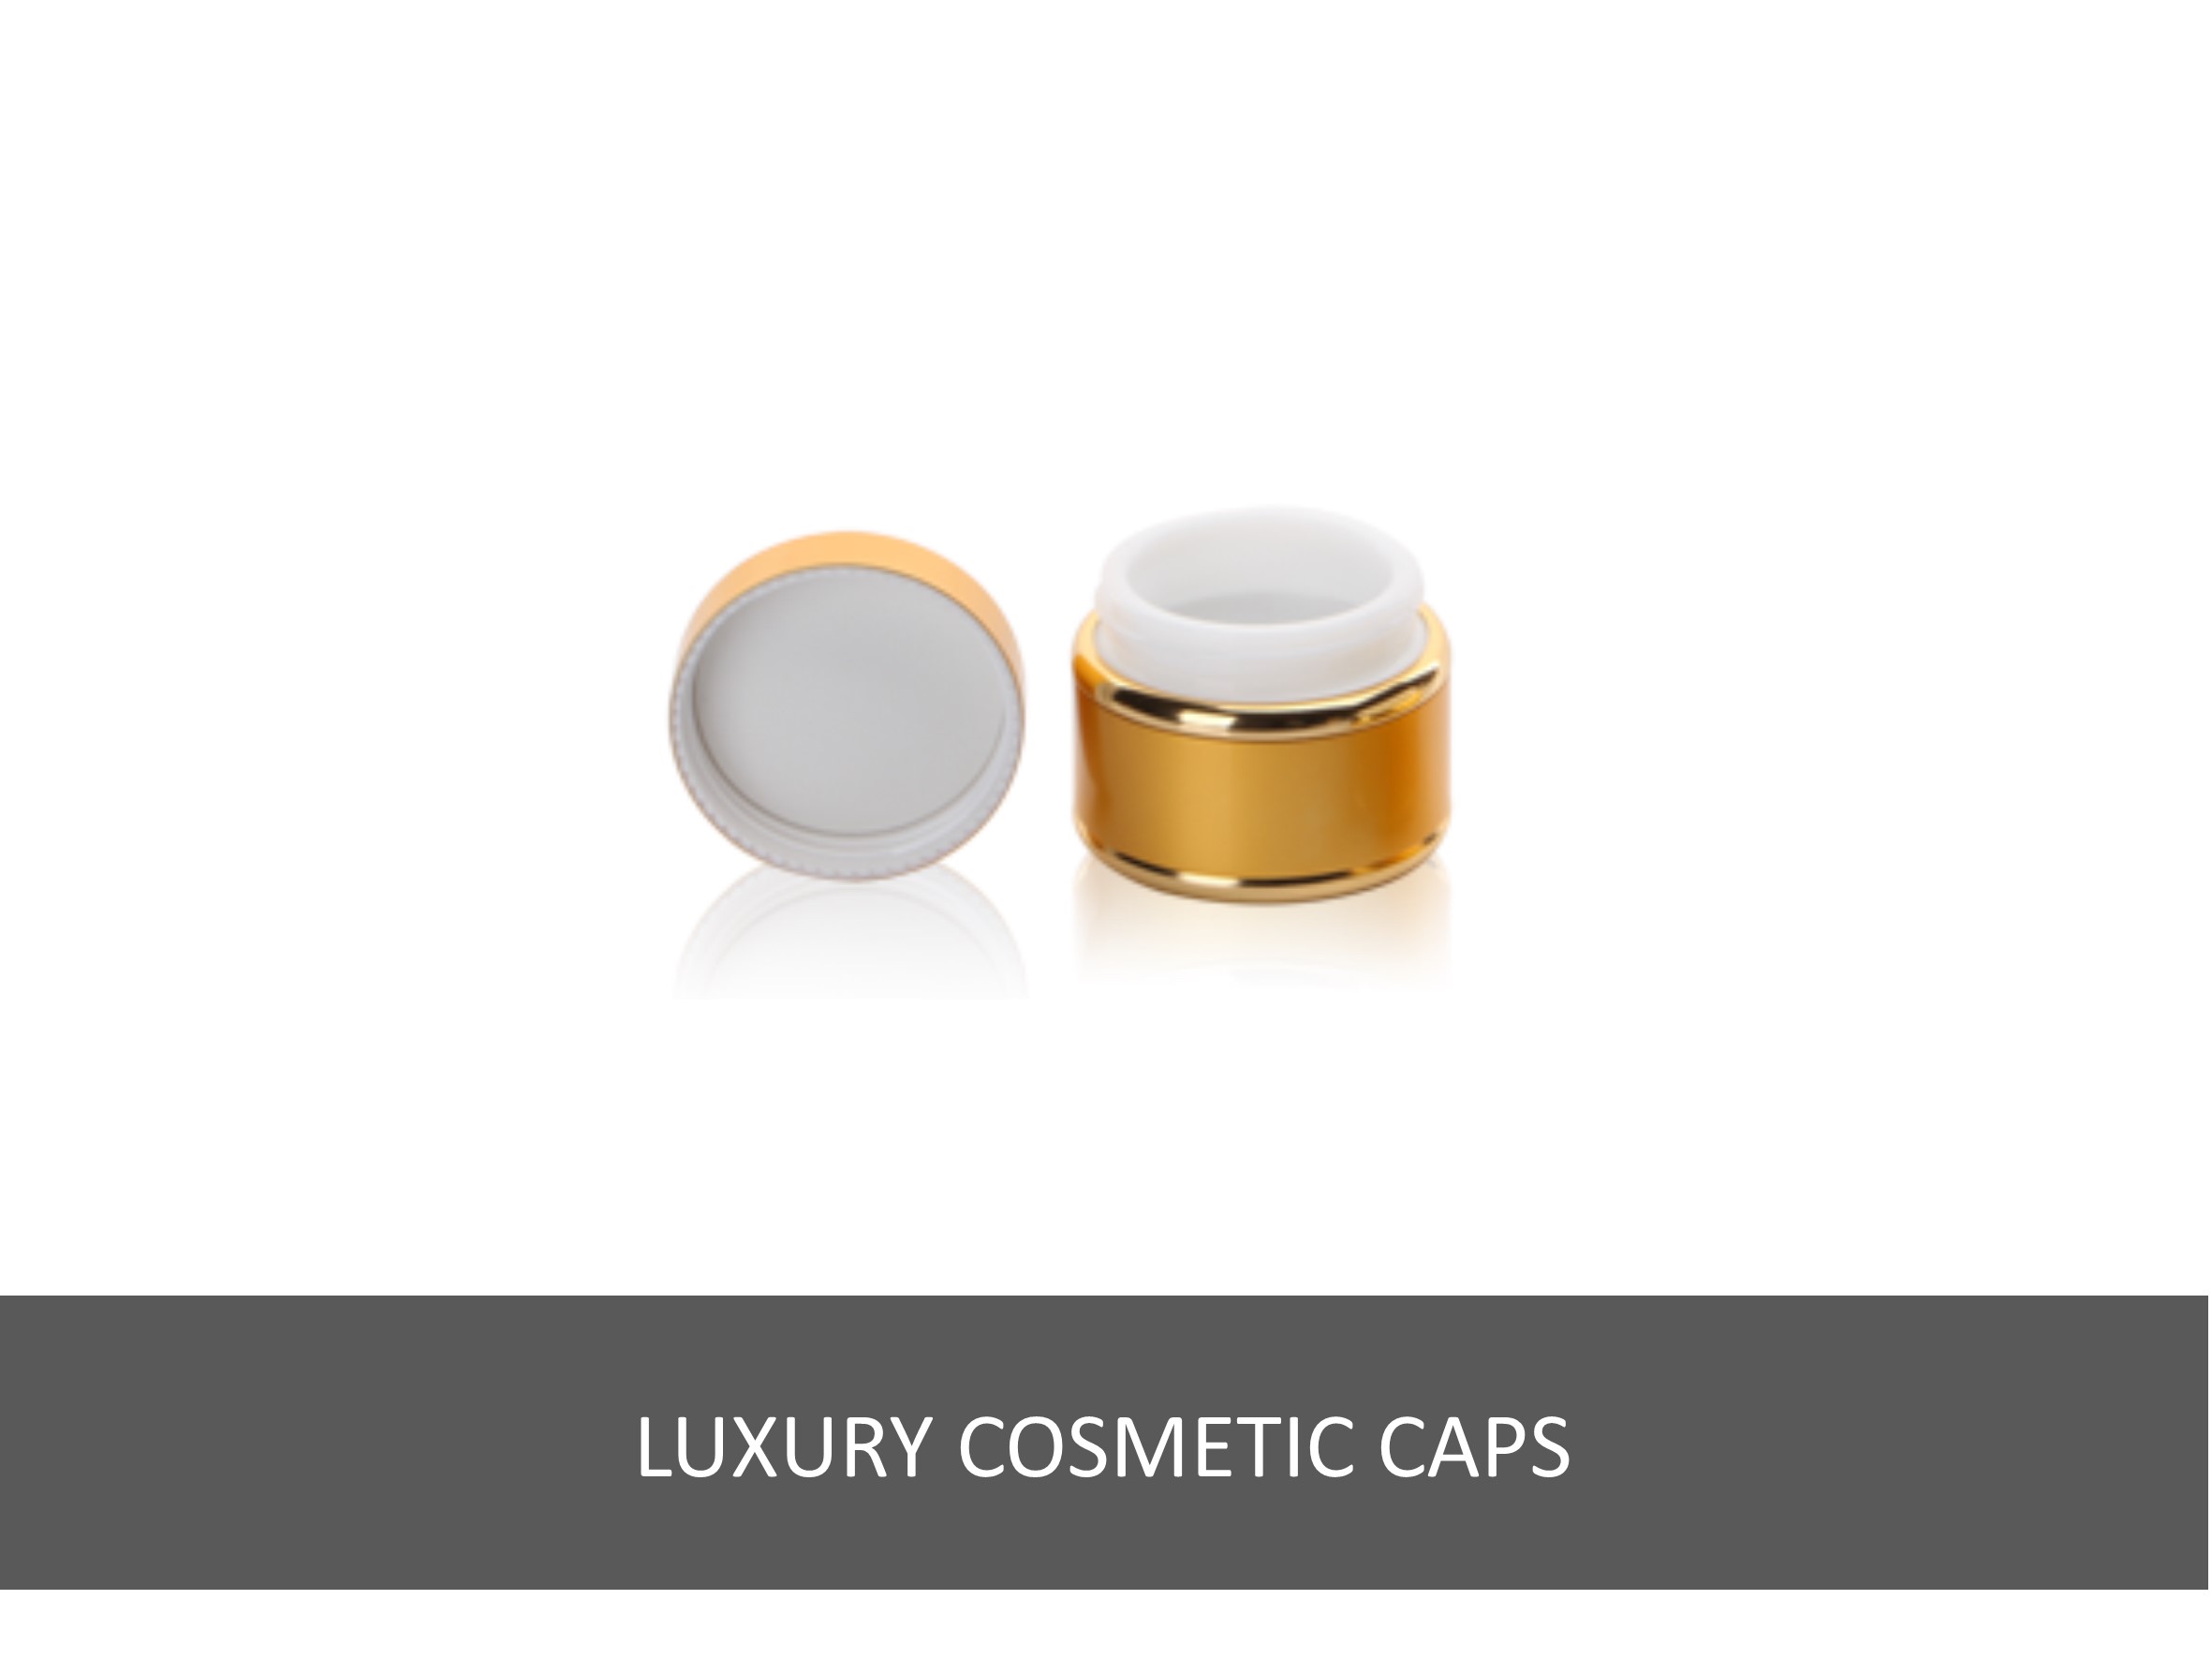 Luxury cosmetic caps